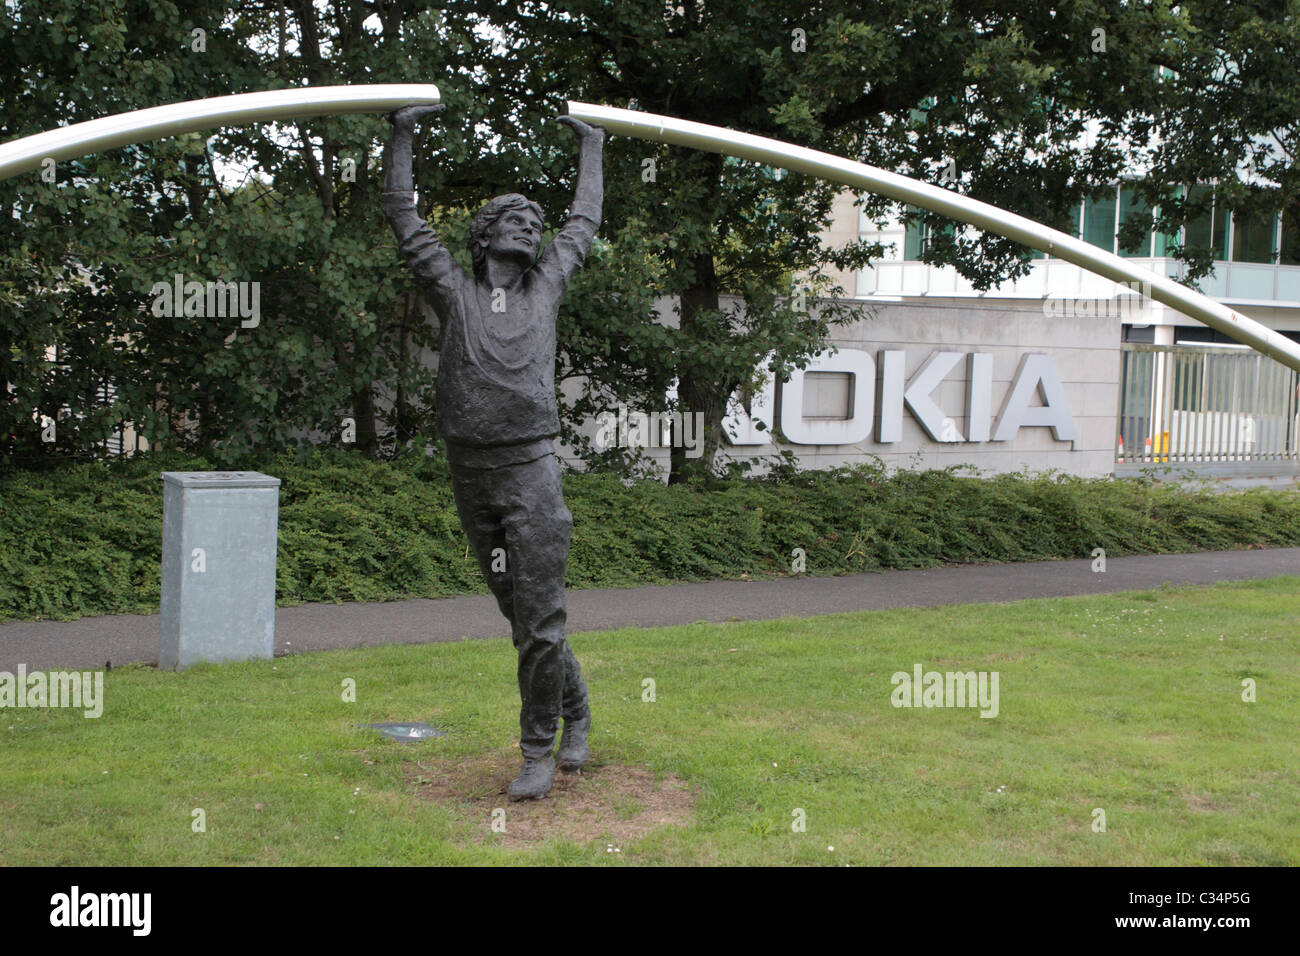 Estatua fuera de la entrada del sitio web de Nokia en Farnborough, Hampshire, Reino Unido. Foto de stock